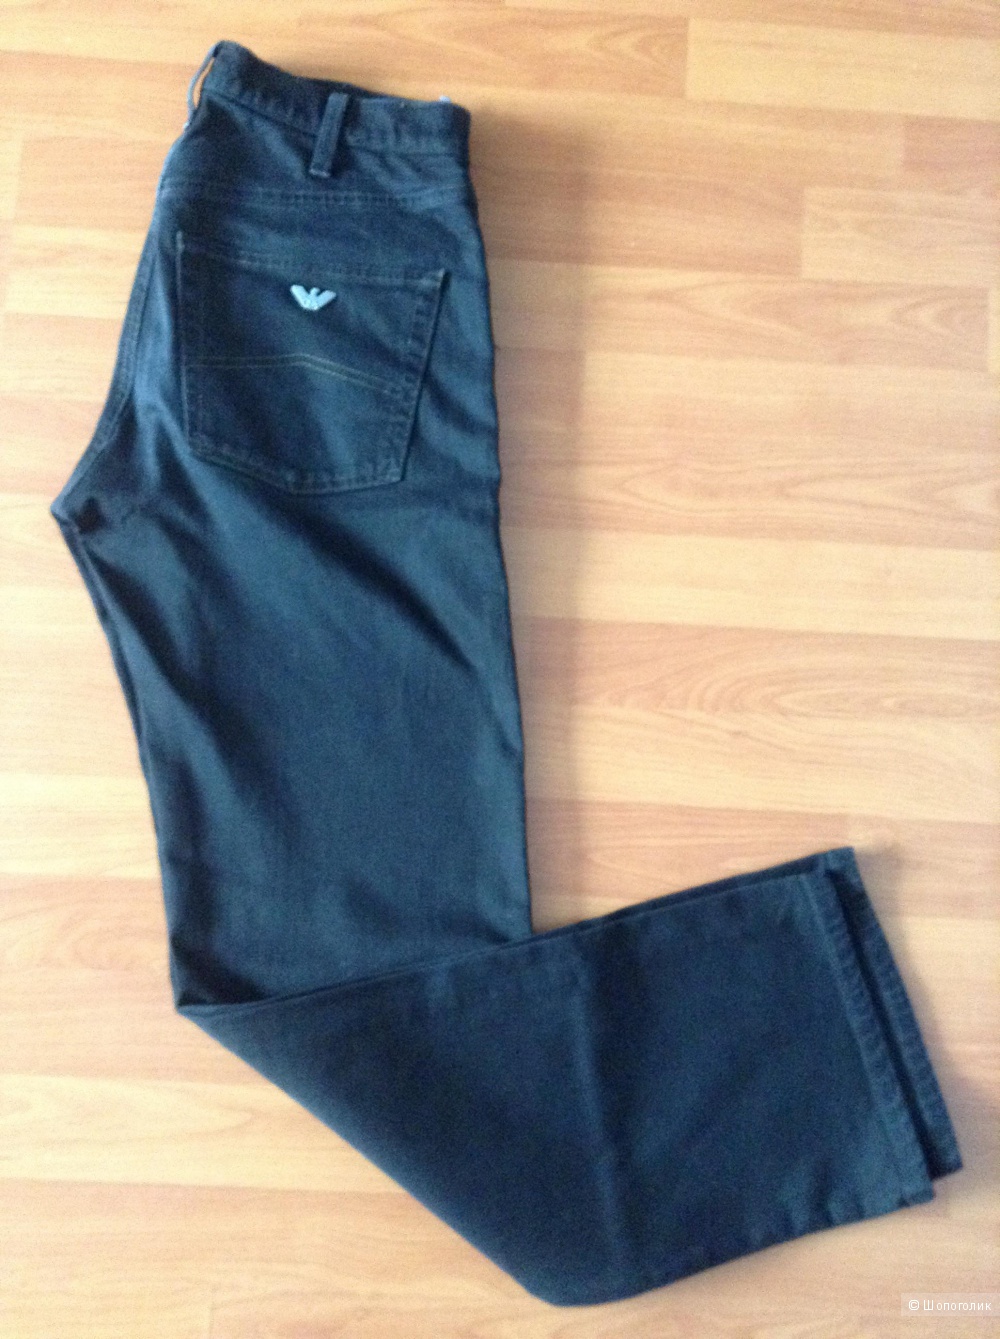 Мужские джинсы Armani Jeans